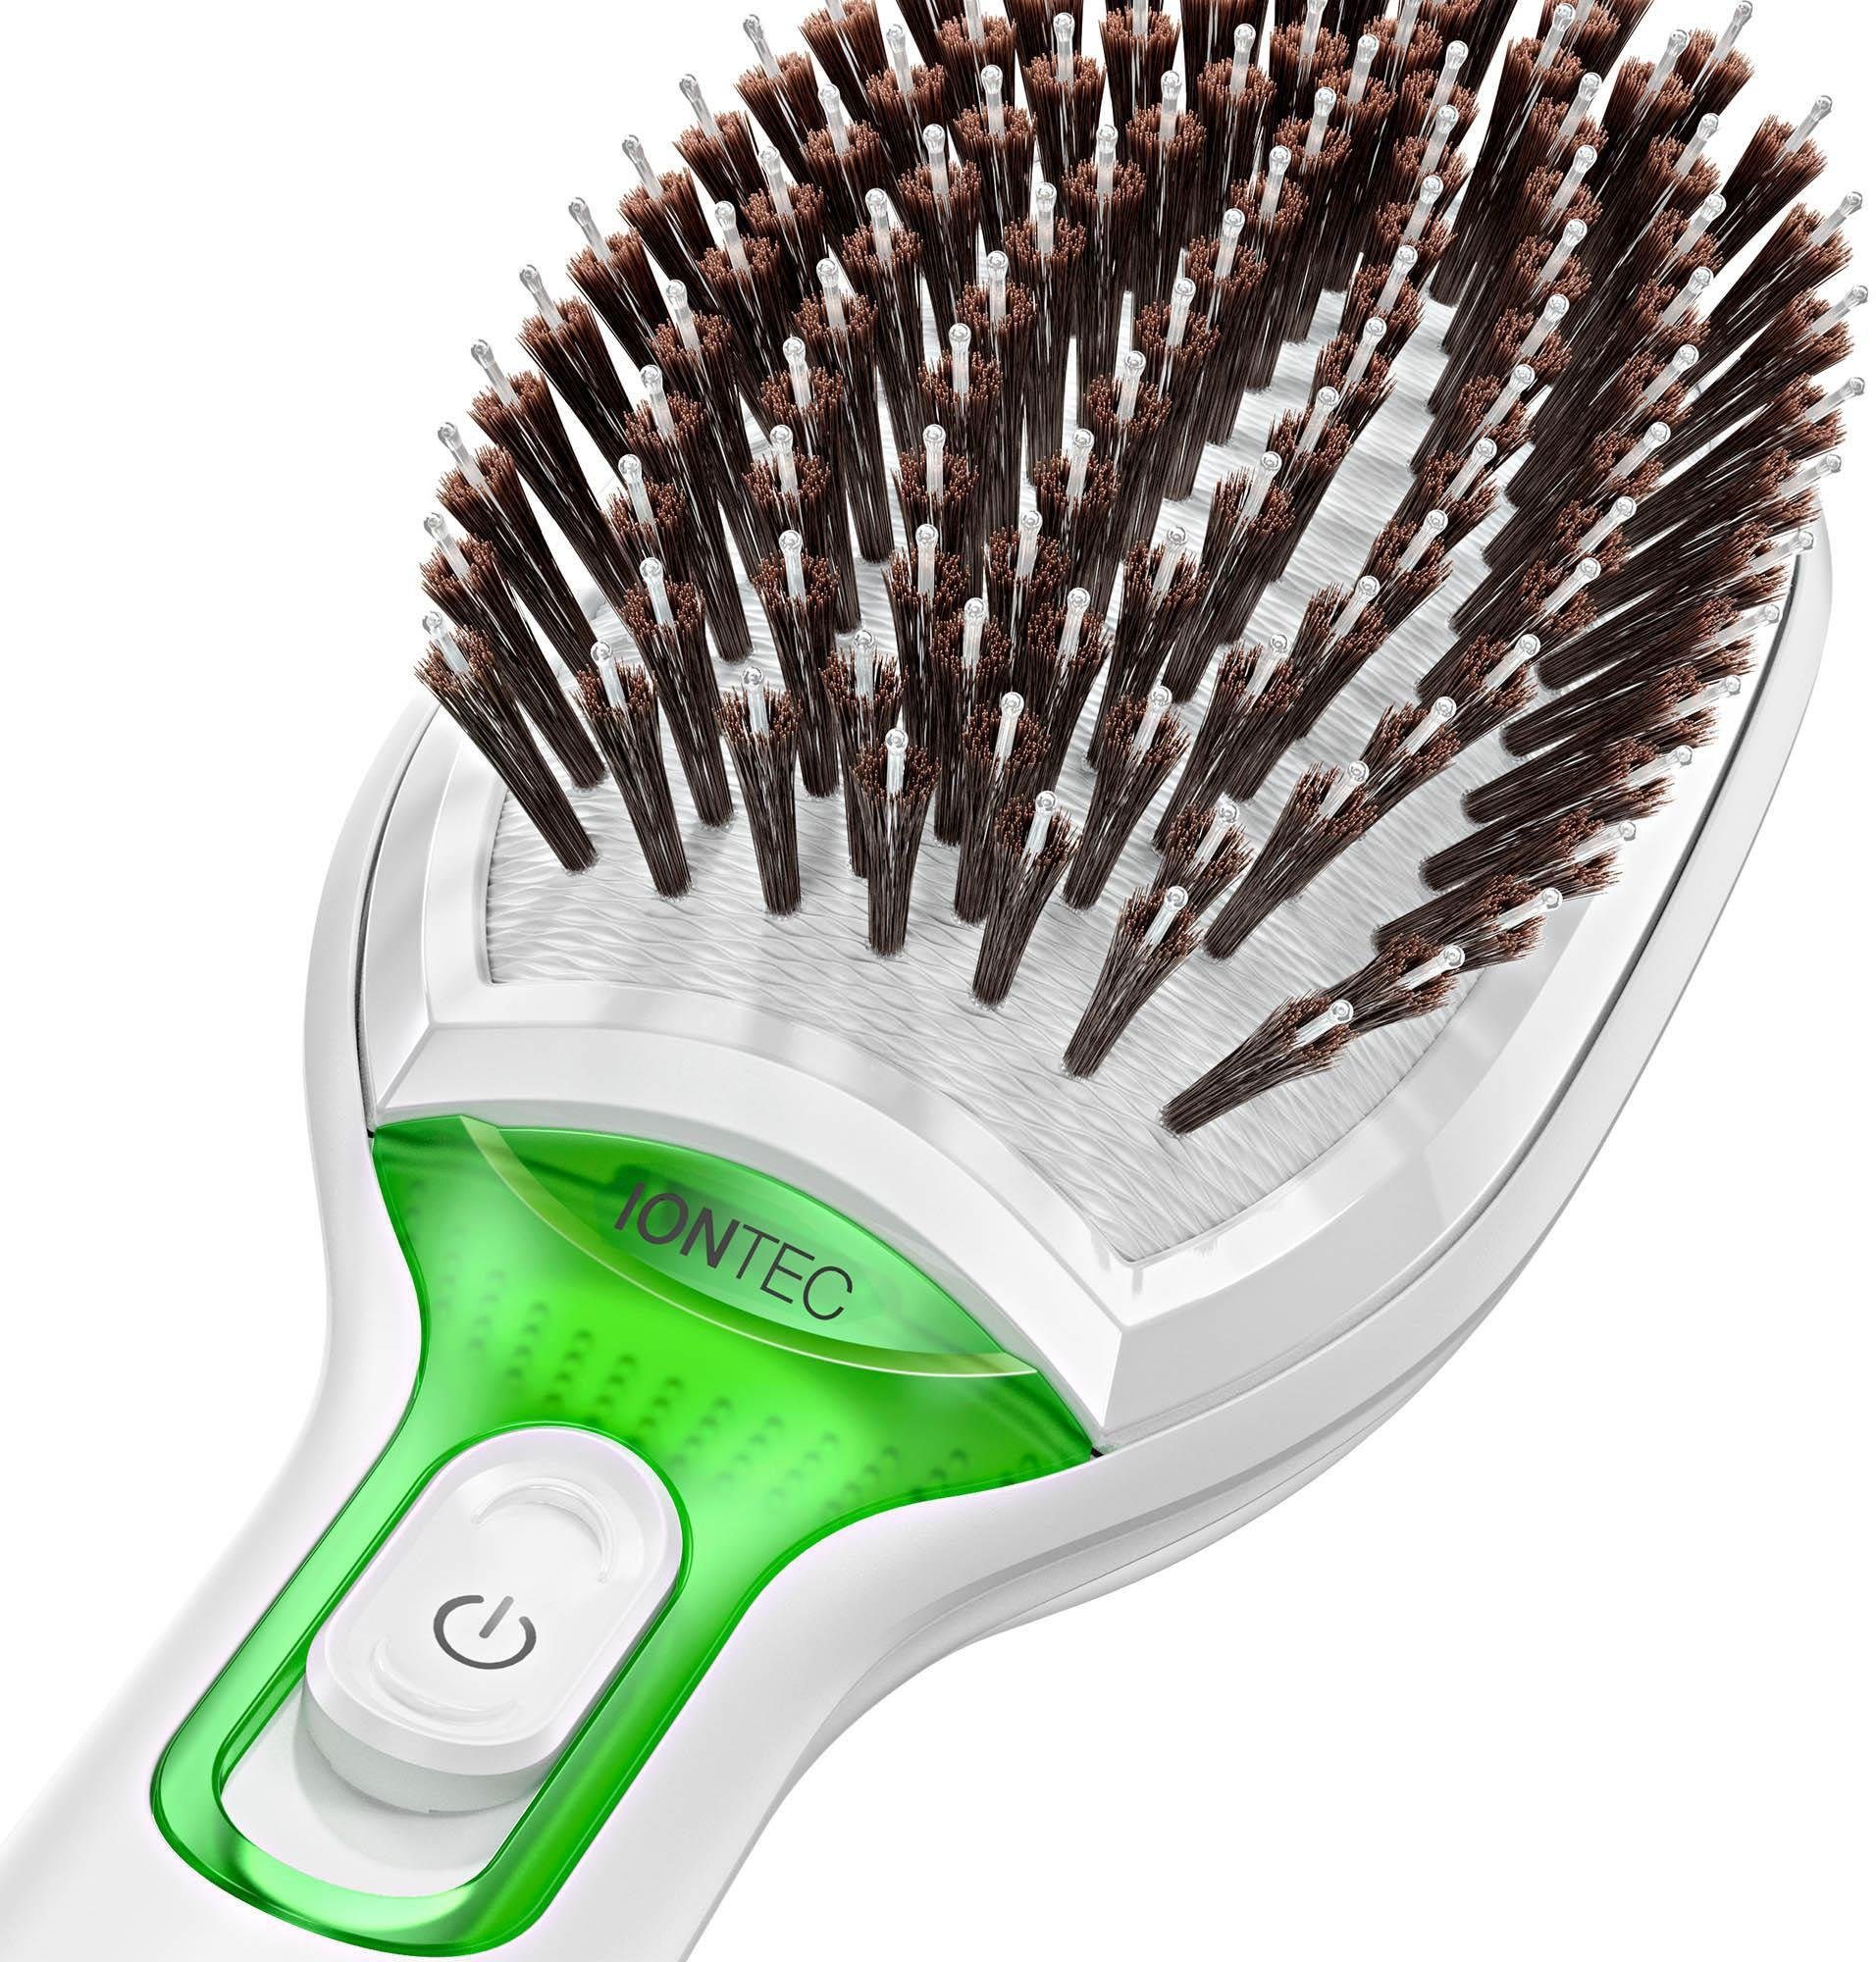 IONTEC Satin Ionen-Technologie natürliche Haarglättbürste 7 Borsten, Glanz-Förderung Braun zur BR750, Hair